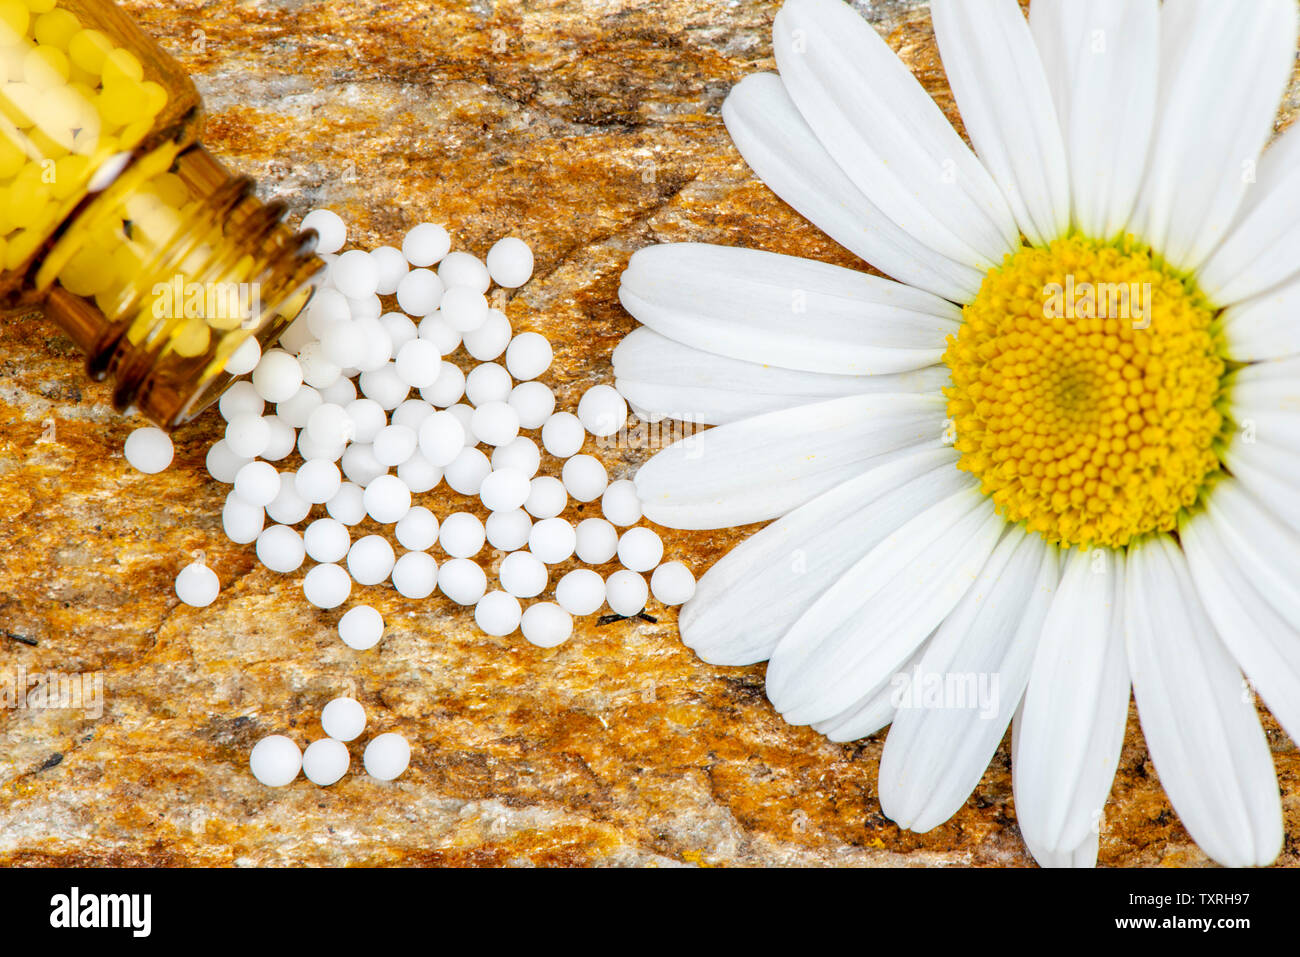 La medicina alternativa con la homeopatía Foto de stock